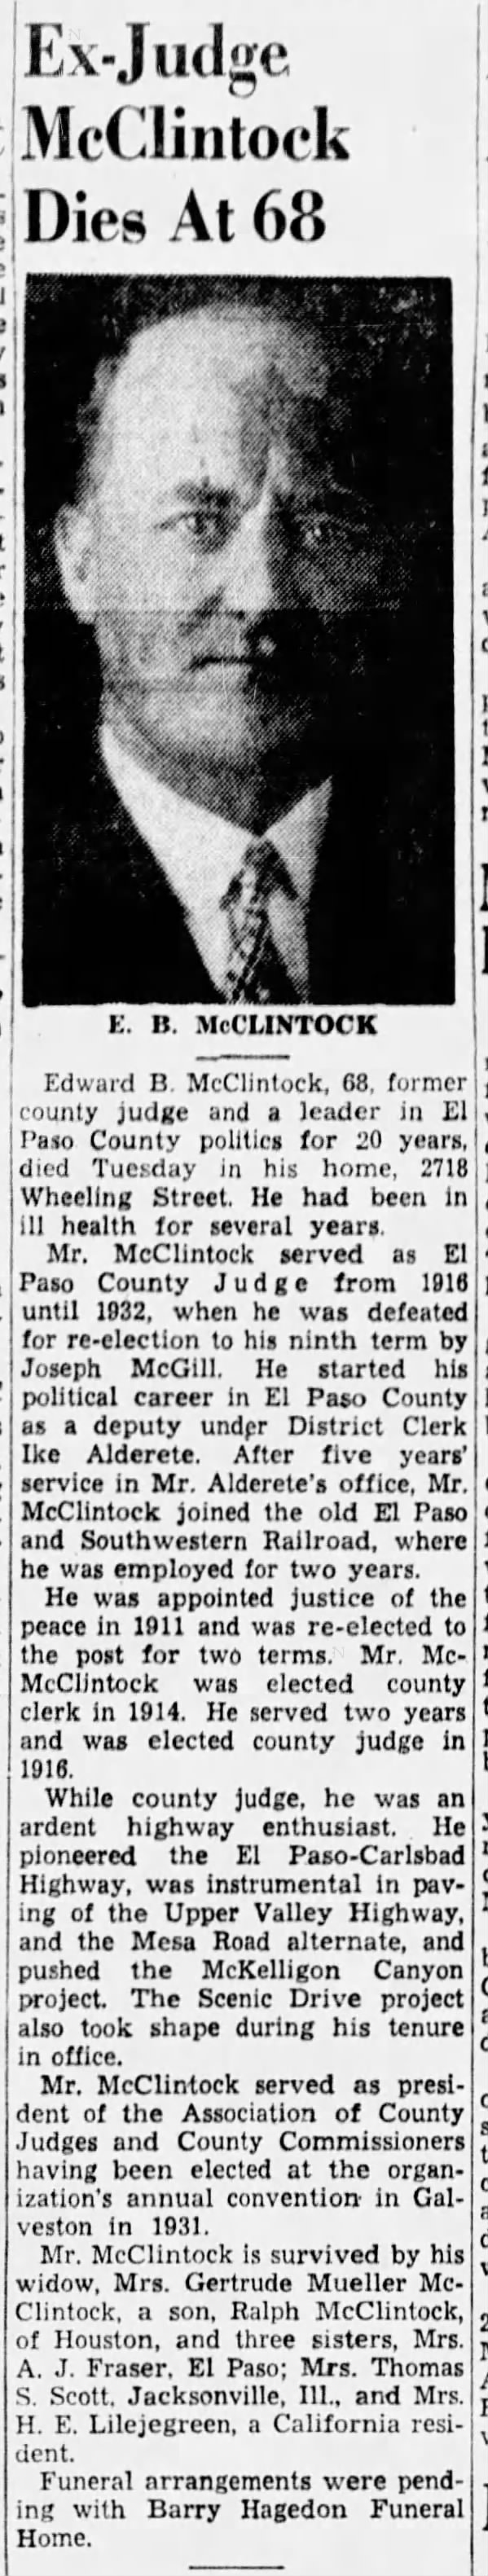 Ex-Judge McClintock Dies at 68